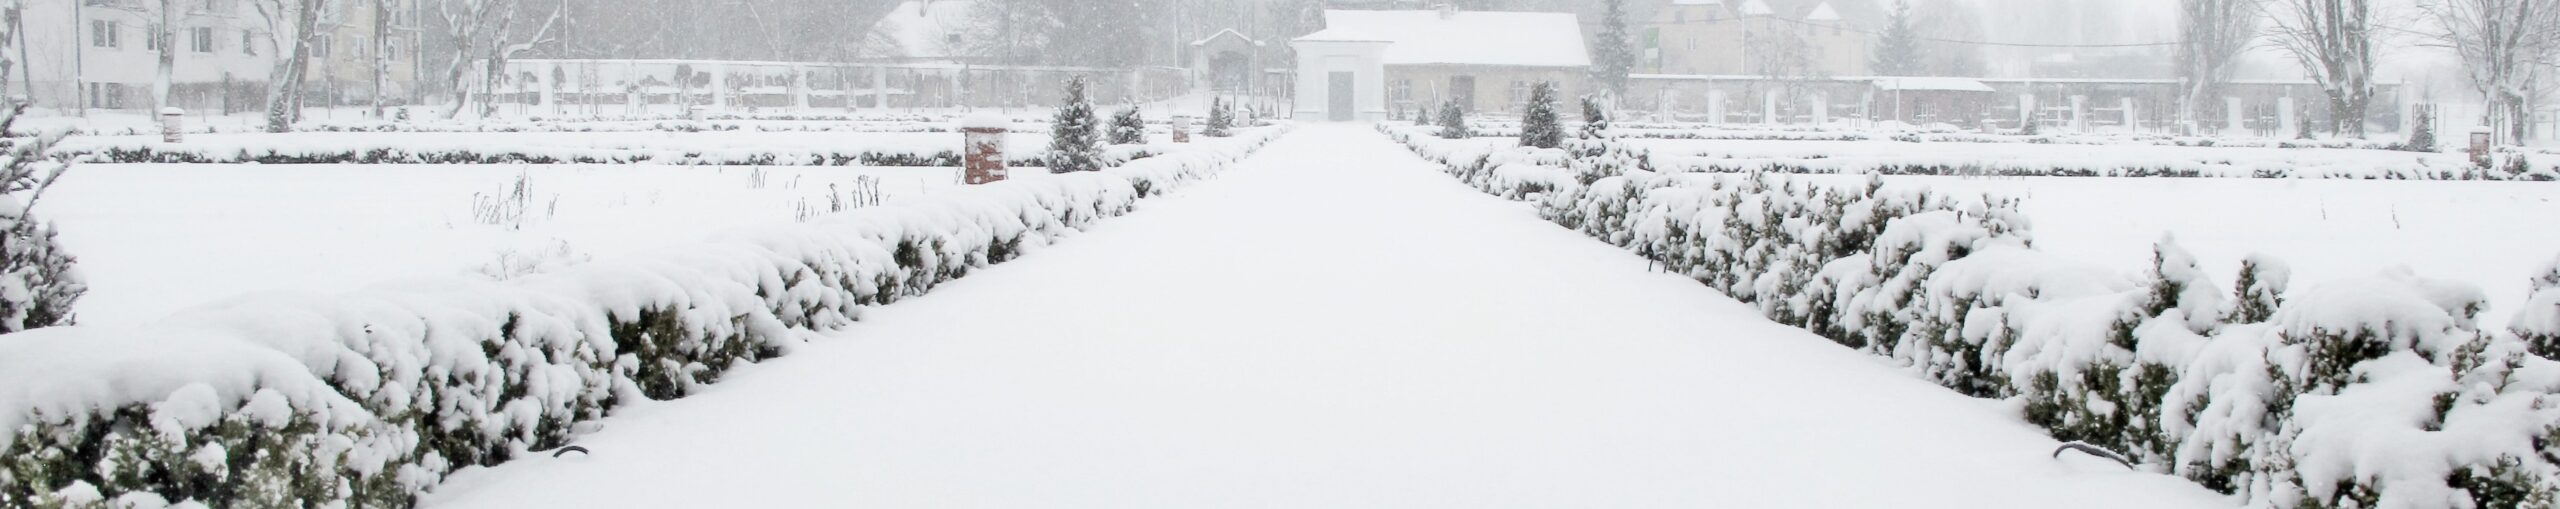 Widok zaśnieżonej głównej aleji ogrodu barokowego.